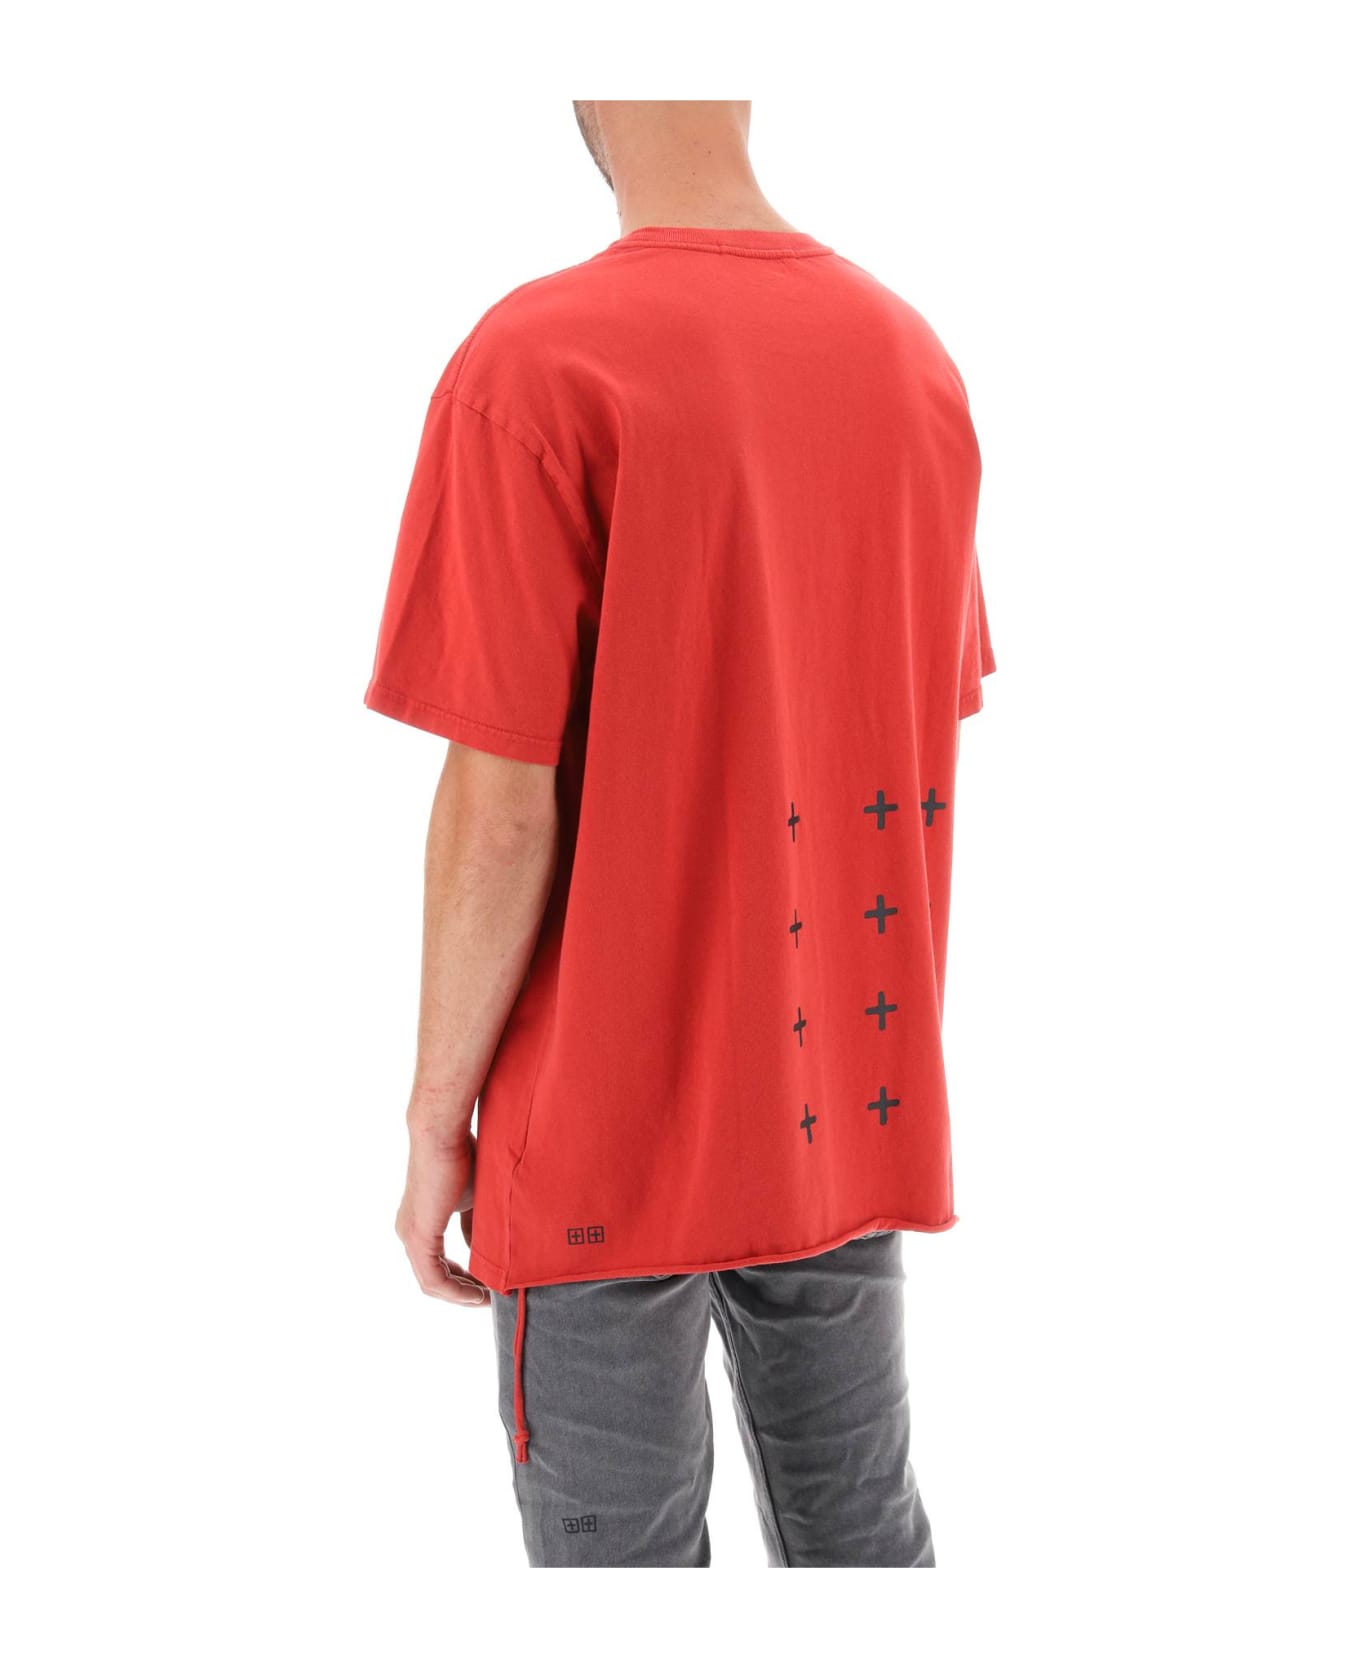 Ksubi '4x4 Biggie' T-shirt - RED (Red)